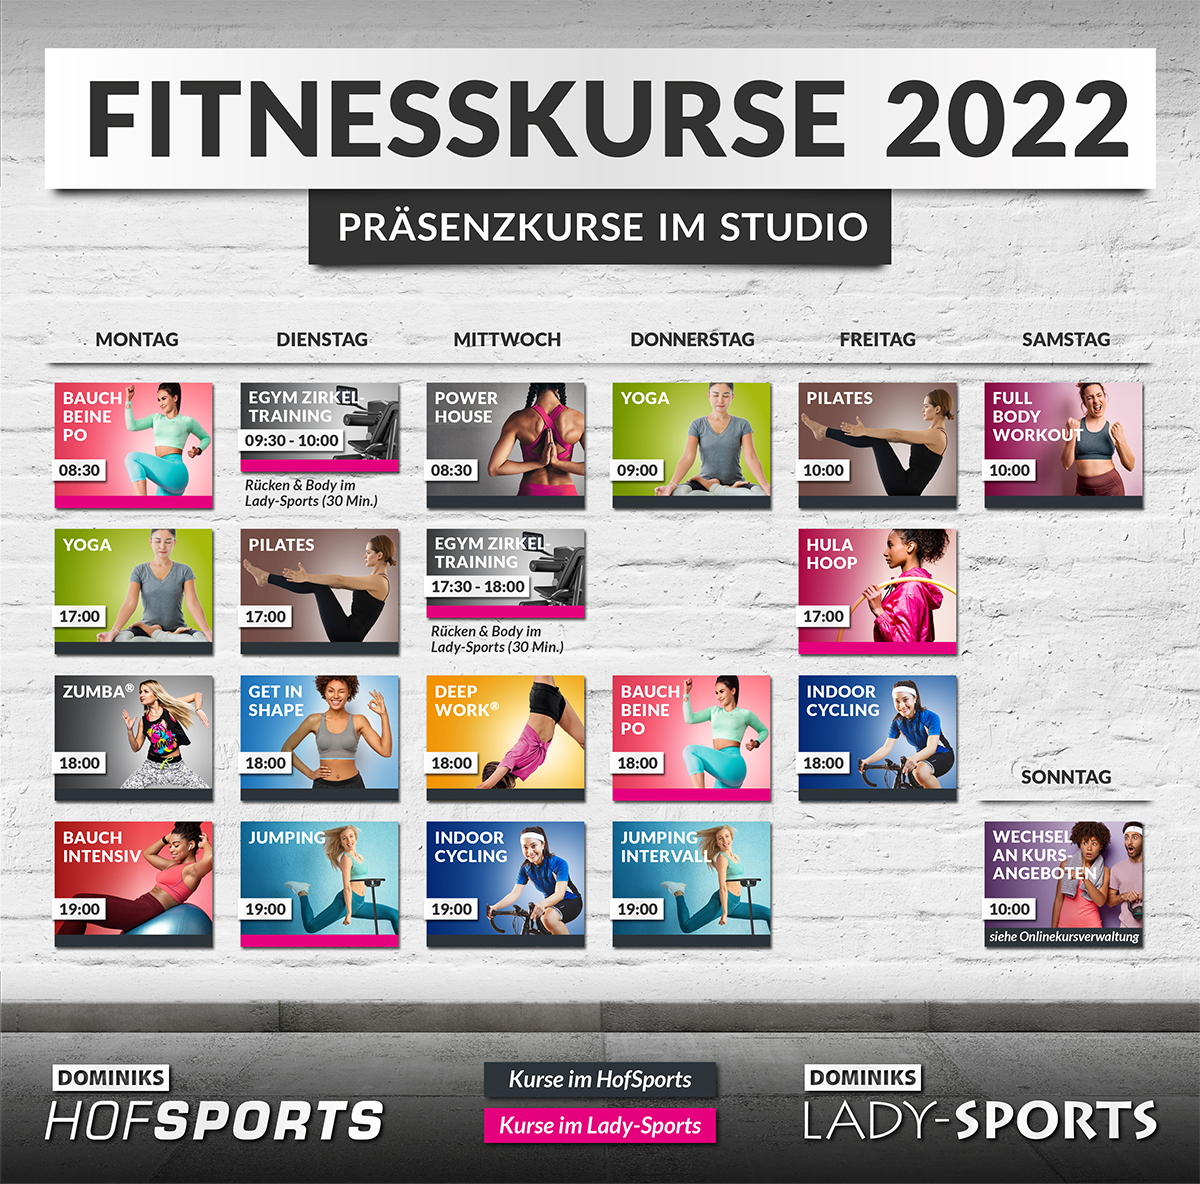 DOMINIKS-HofSports-Lady-Sports_Kursplan Fitnesskurse 2022